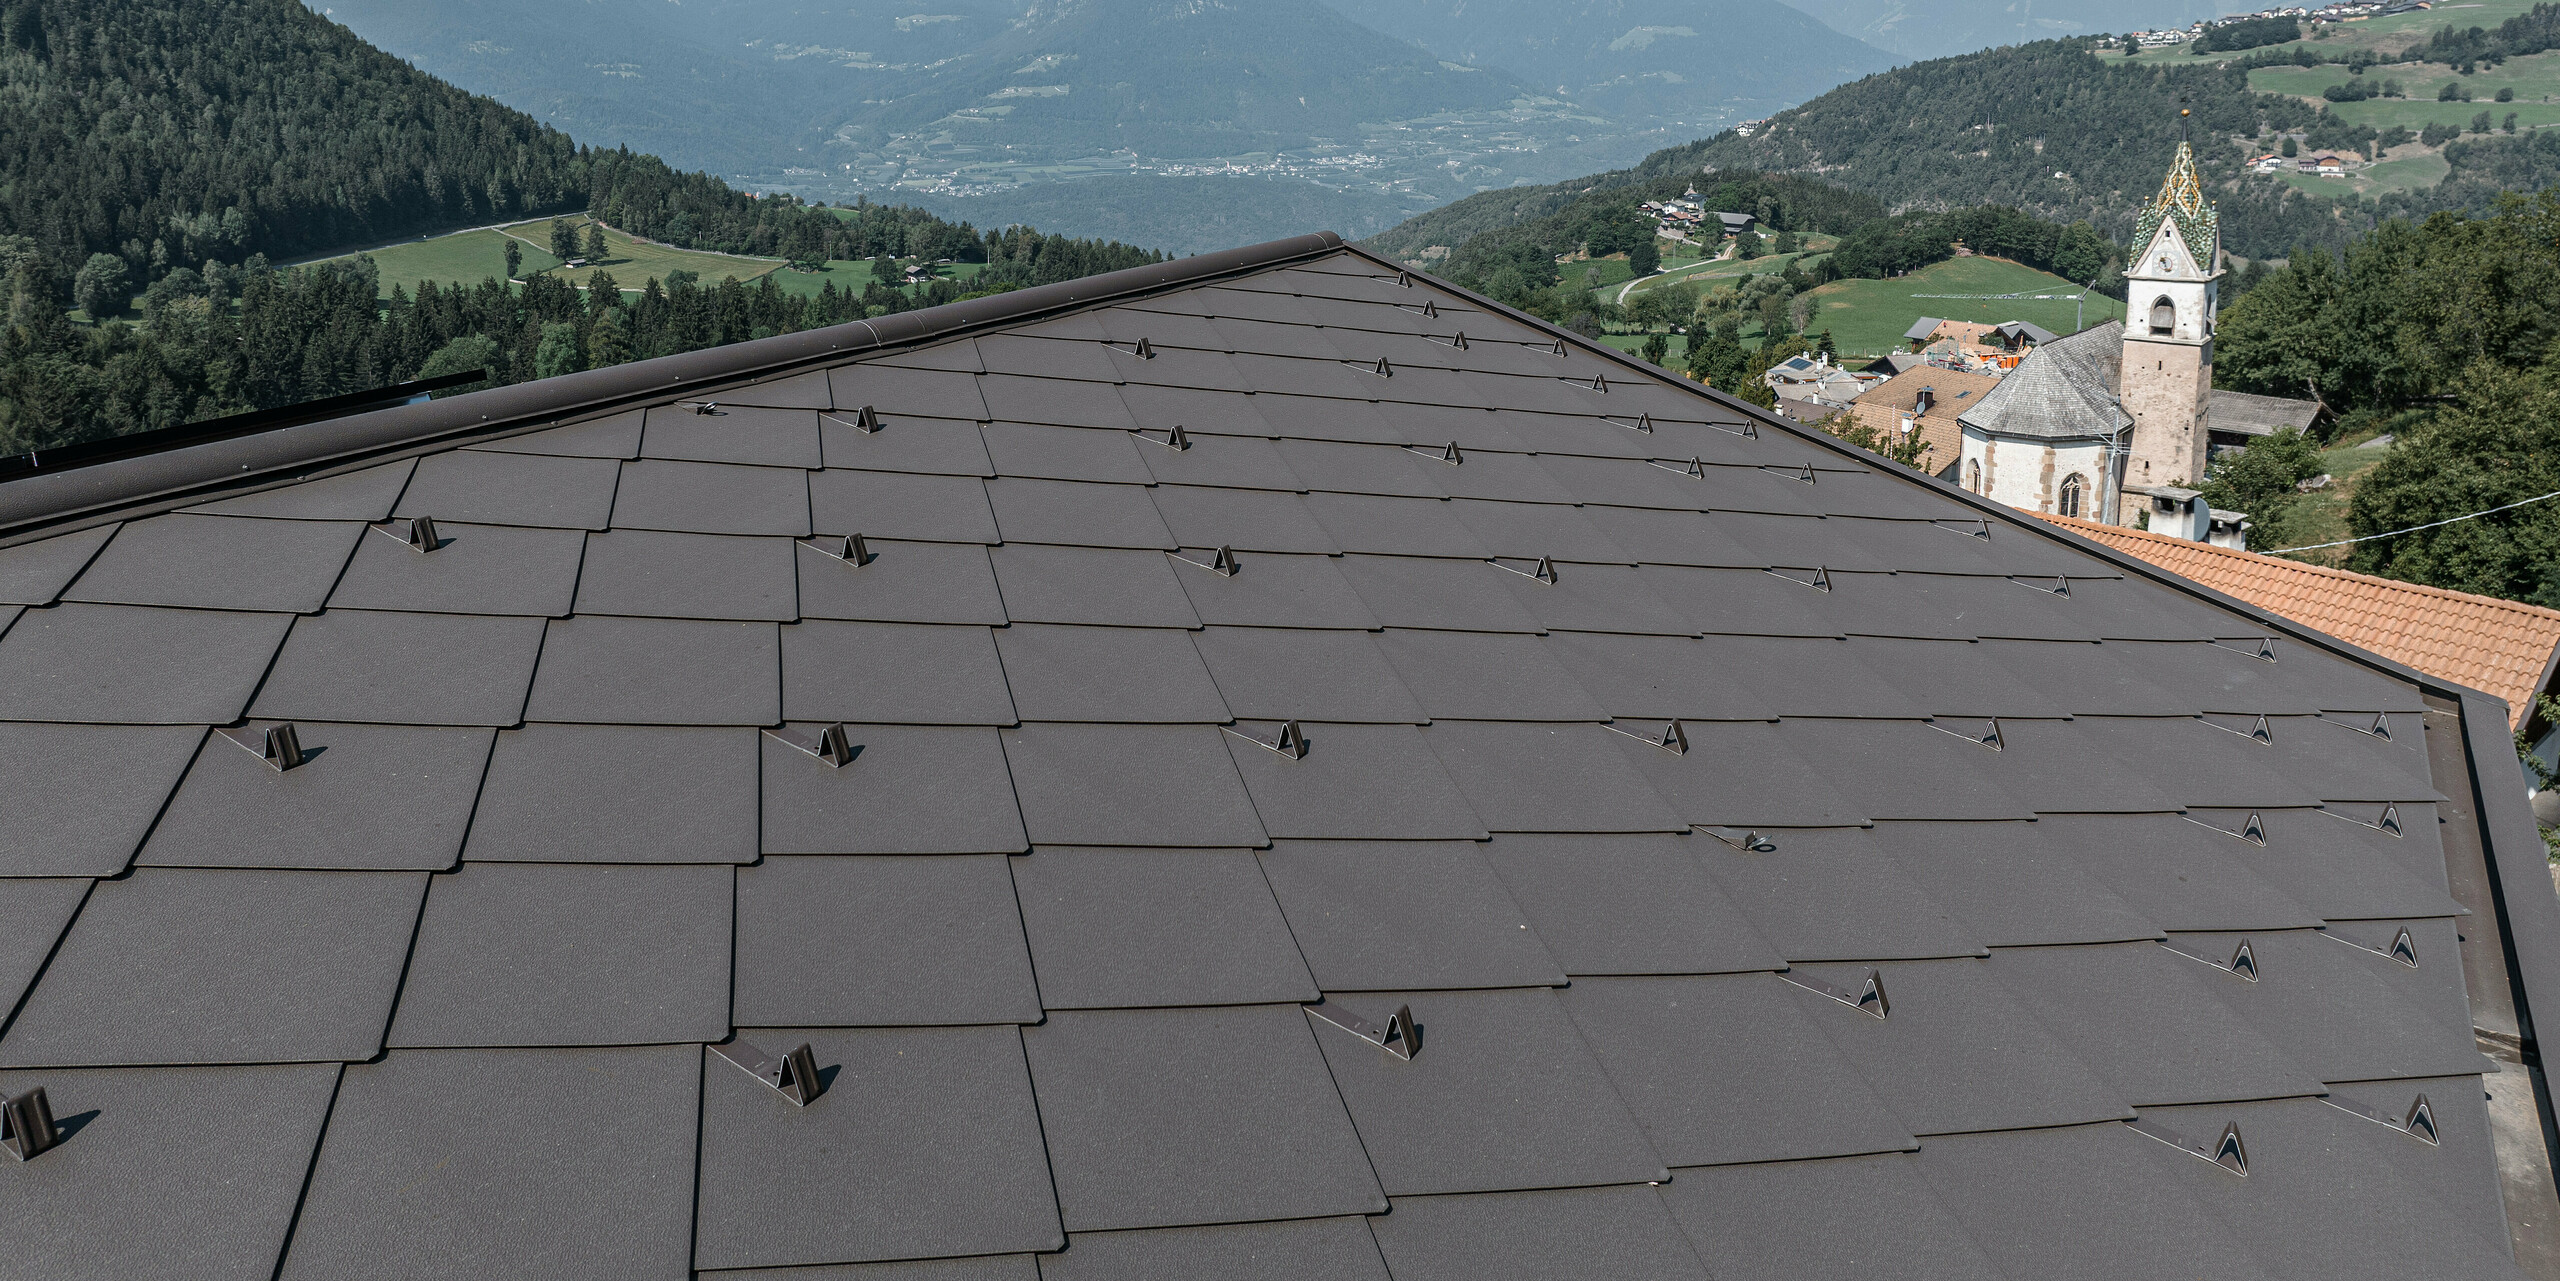 Detailní záběr střechy z hnědých hliníkových šablon PREFA v jihotyrolském Möltenu s působivým výhledem na okolní údolí a hory. Plechové kosočtverce nabízejí ochranu i estetiku a harmonicky zapadají do přírodní krajiny. V pozadí je vidět malebný vesnický kostel s charakteristickou věží, obklopený zelenými kopci a zemědělskou půdou. Pravidelně upevněné sněhové zábrany na střeše mají zabránit sesuvu střešních lavin. Systém ochrany proti sněhu je také v barvě P.10 tmavě hnědé a harmonicky zapadá do celkového obrazu díky jednotné barvě.